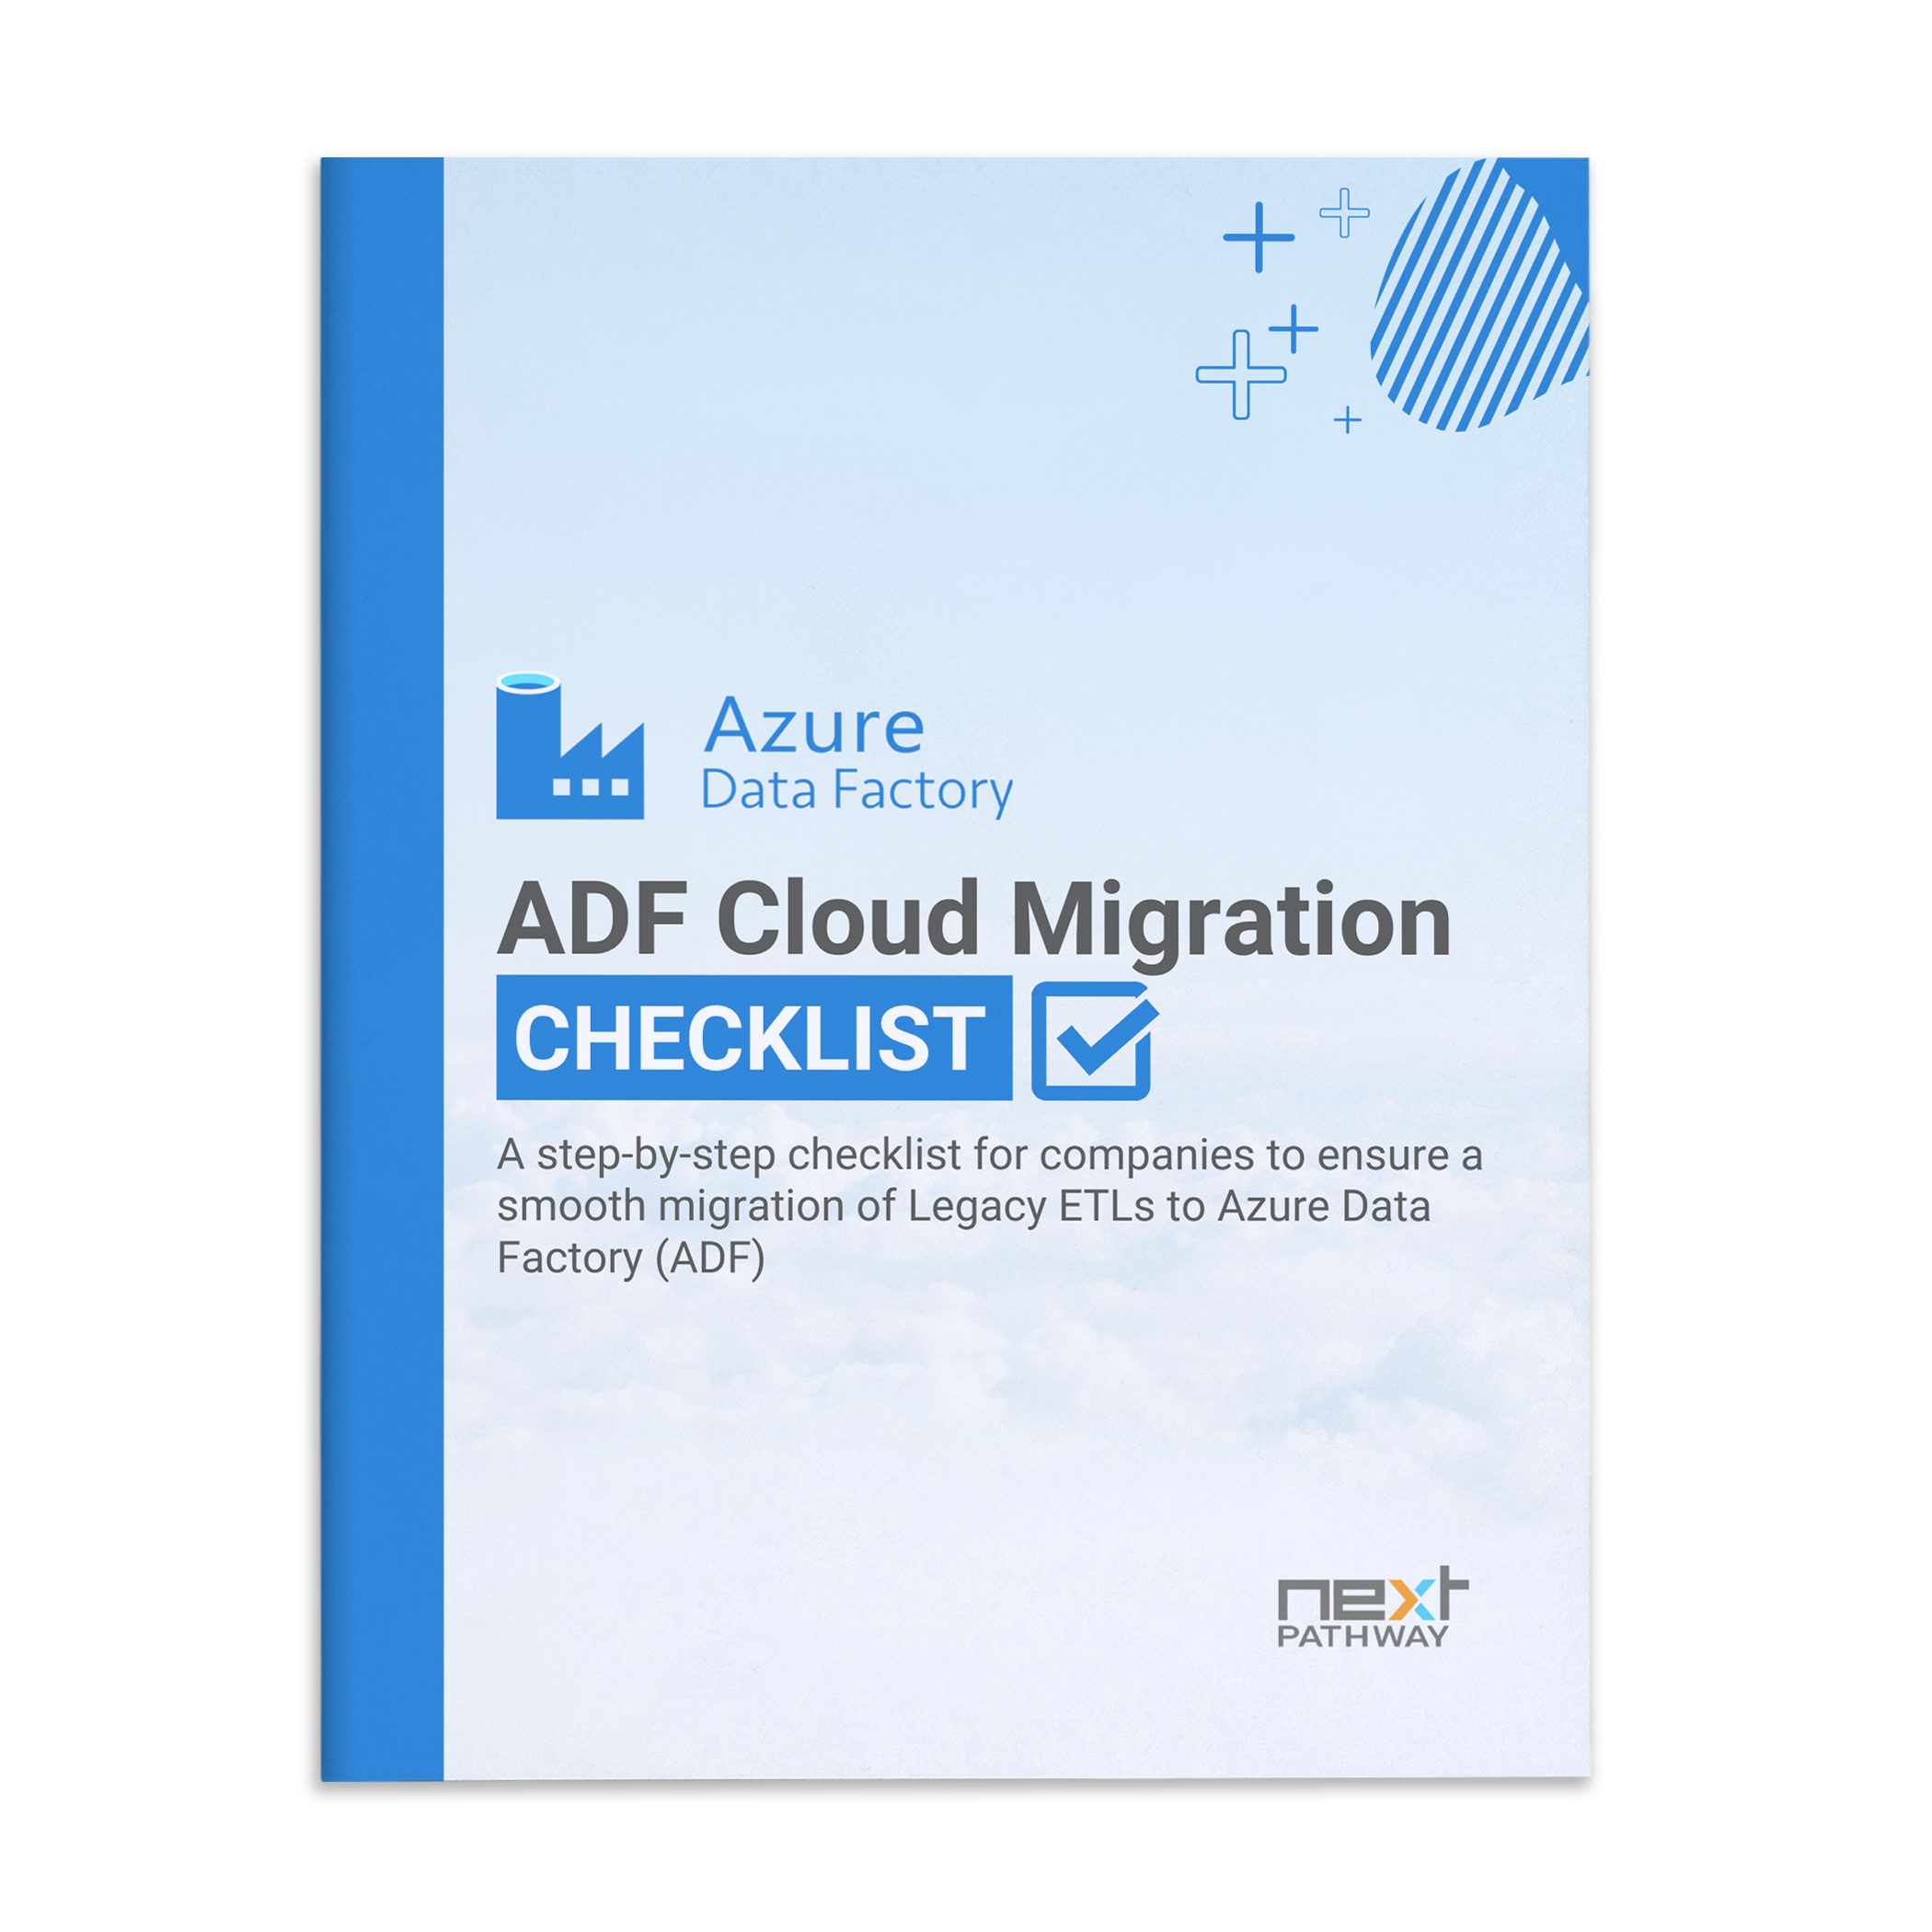 ADF Cloud Migration CHECKLIST